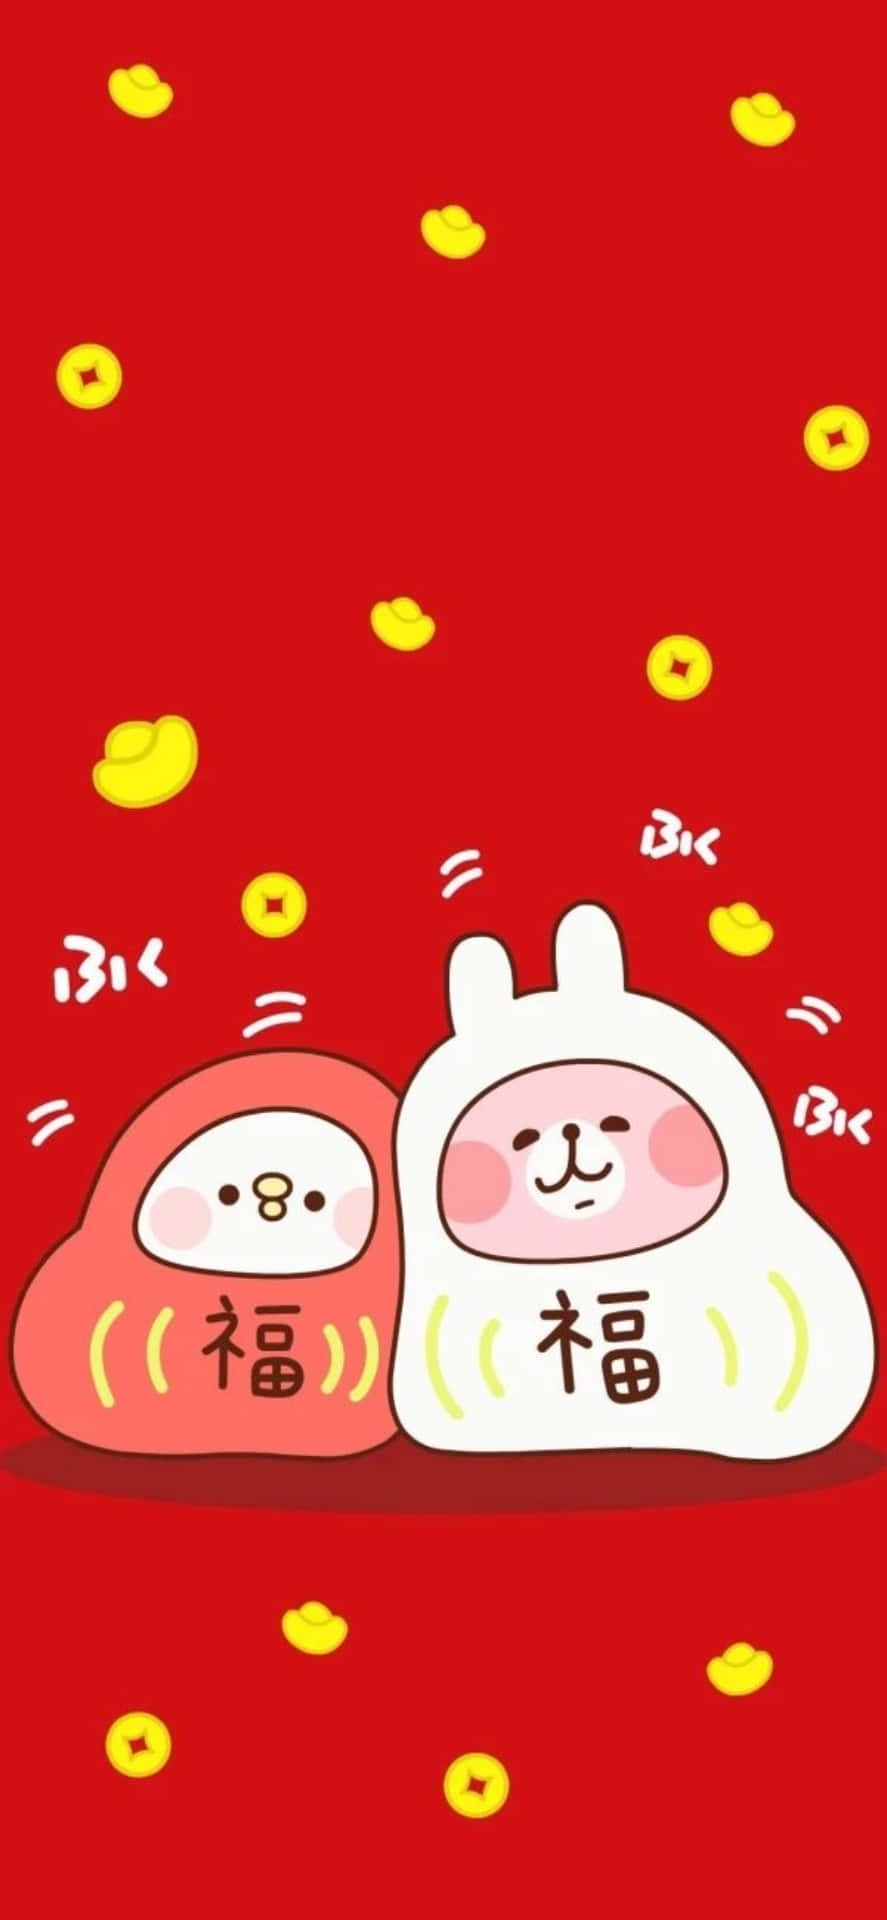 Feiernsie Das Chinesische Neujahr Mit Einem Neuen Iphone. Wallpaper